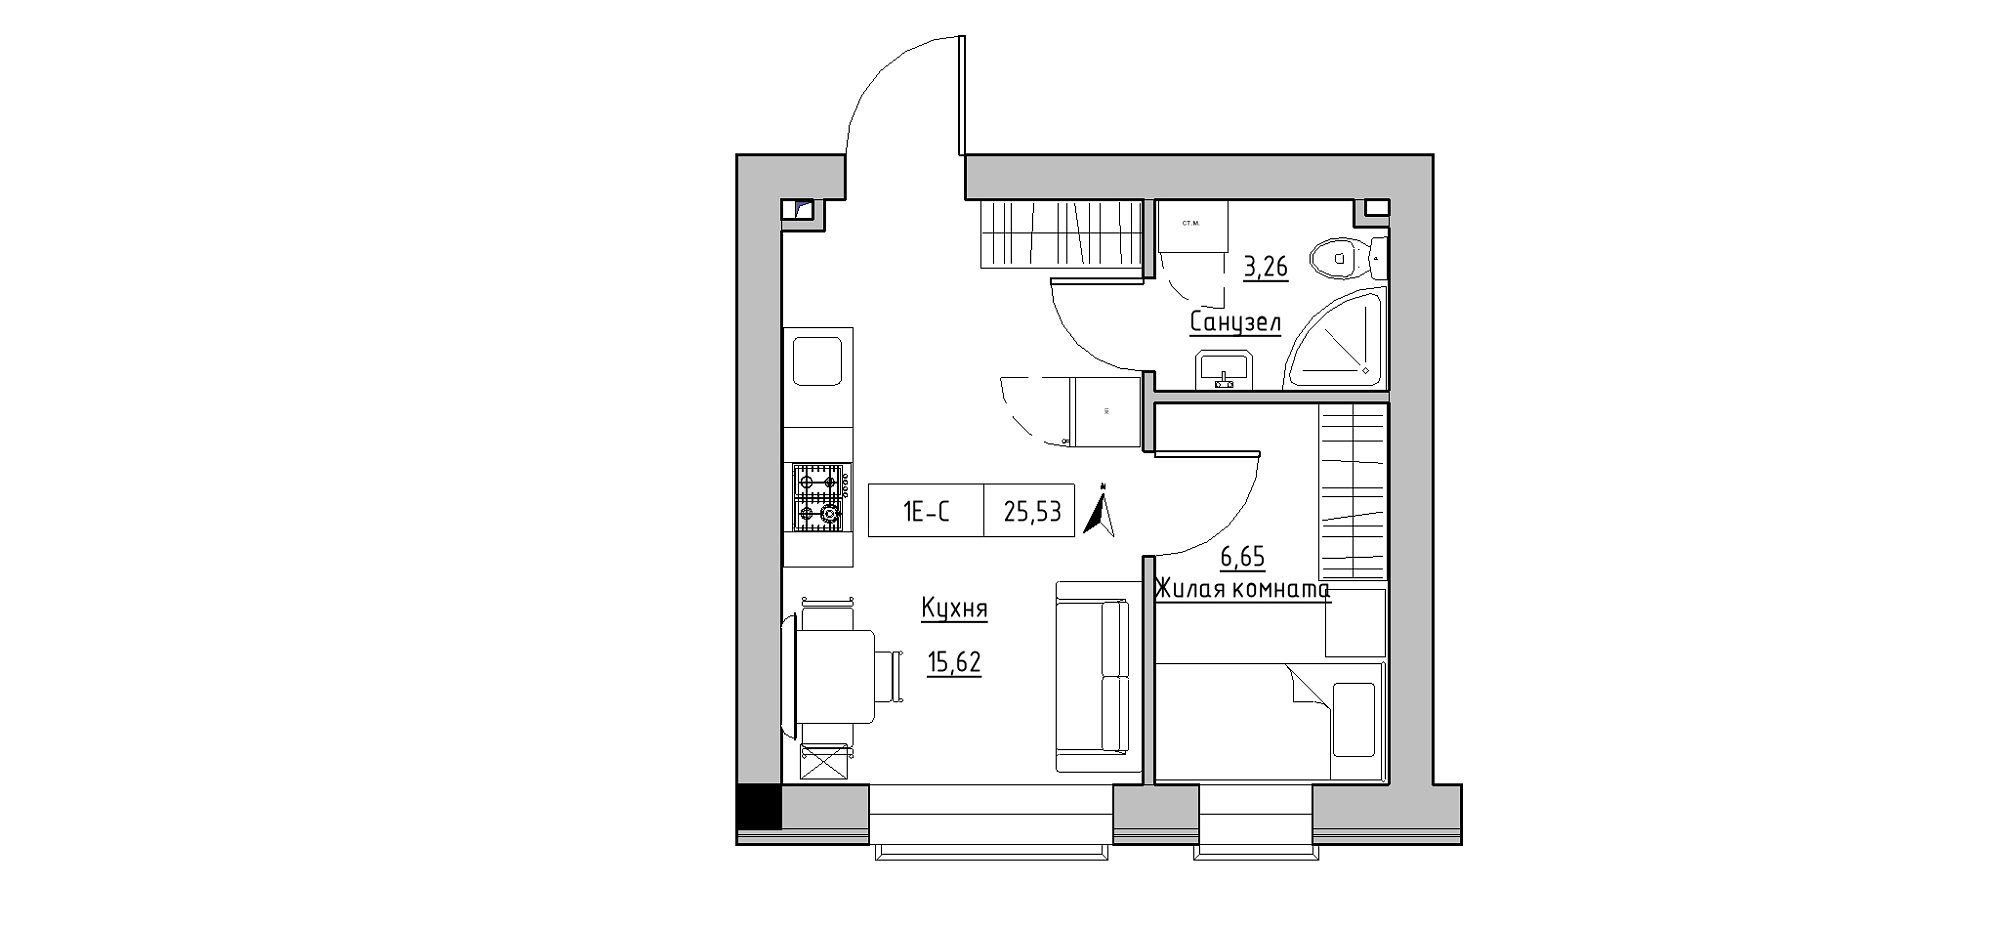 Планировка 1-к квартира площей 25.53м2, KS-020-03/0004.